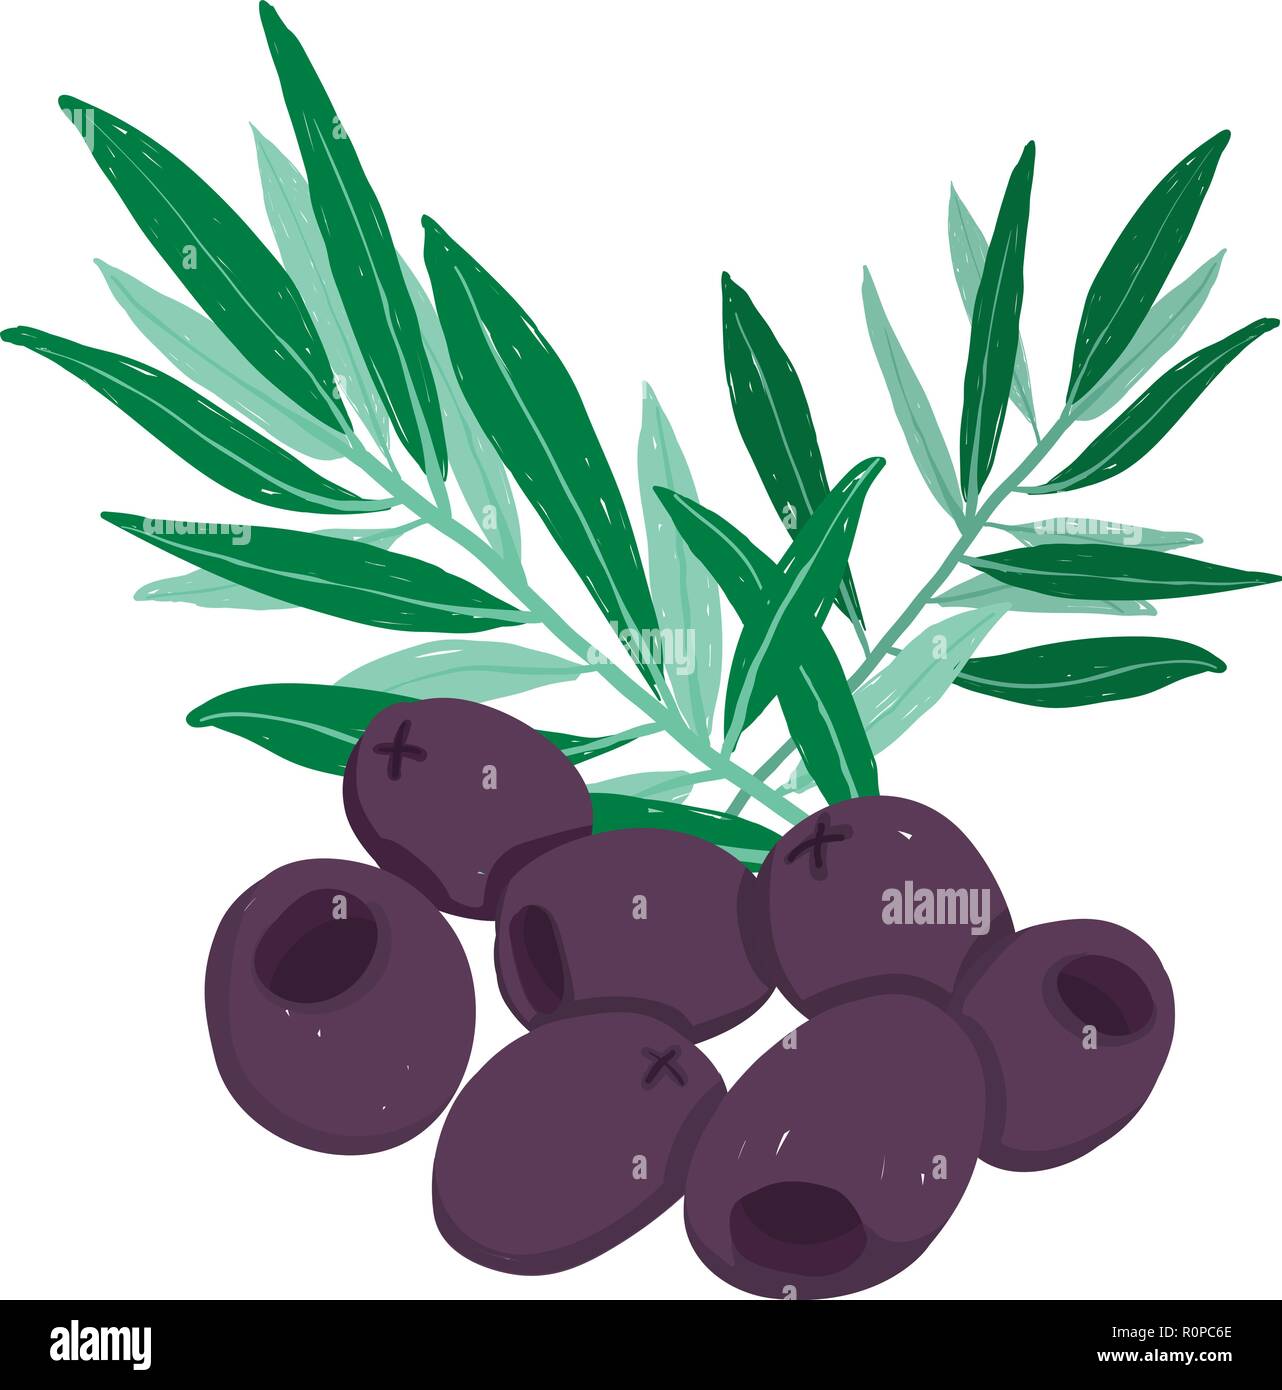 Ensemble pictural vecteur d'olives noires et vertes ; Direction générale de l'illustration, modifiable et évolutif isolé sur un fond blanc. L'utiliser pour des recettes, restaura Illustration de Vecteur